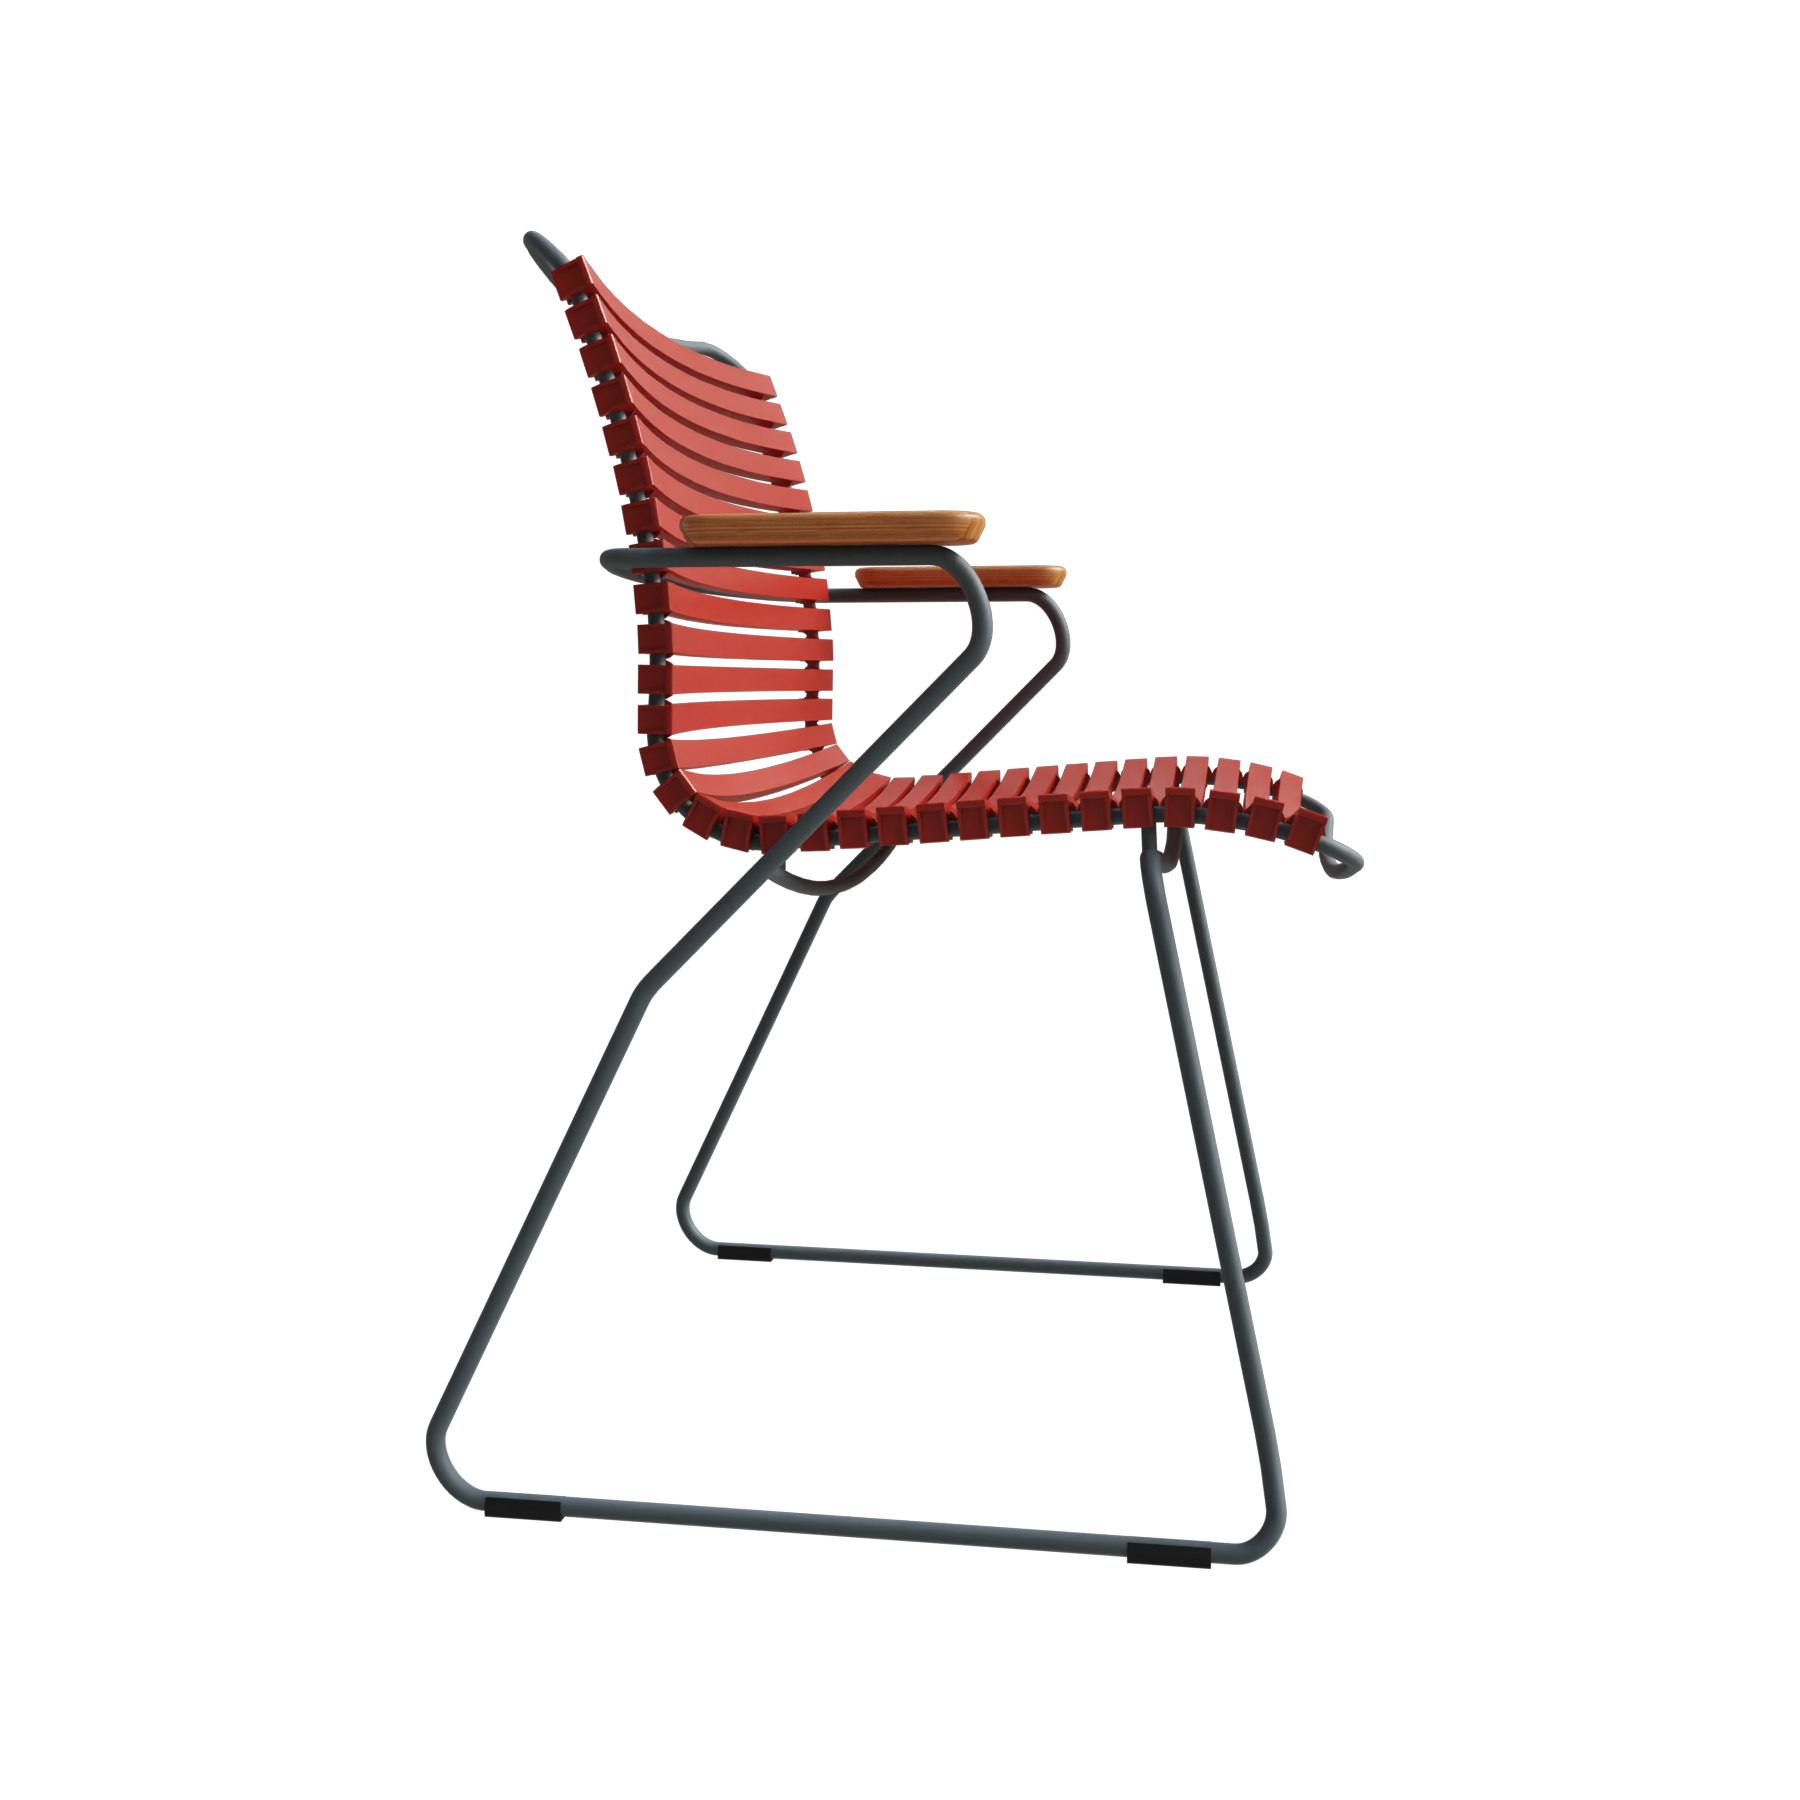 Dining Chair Click mit Bambusarmlehnen 10801-1918